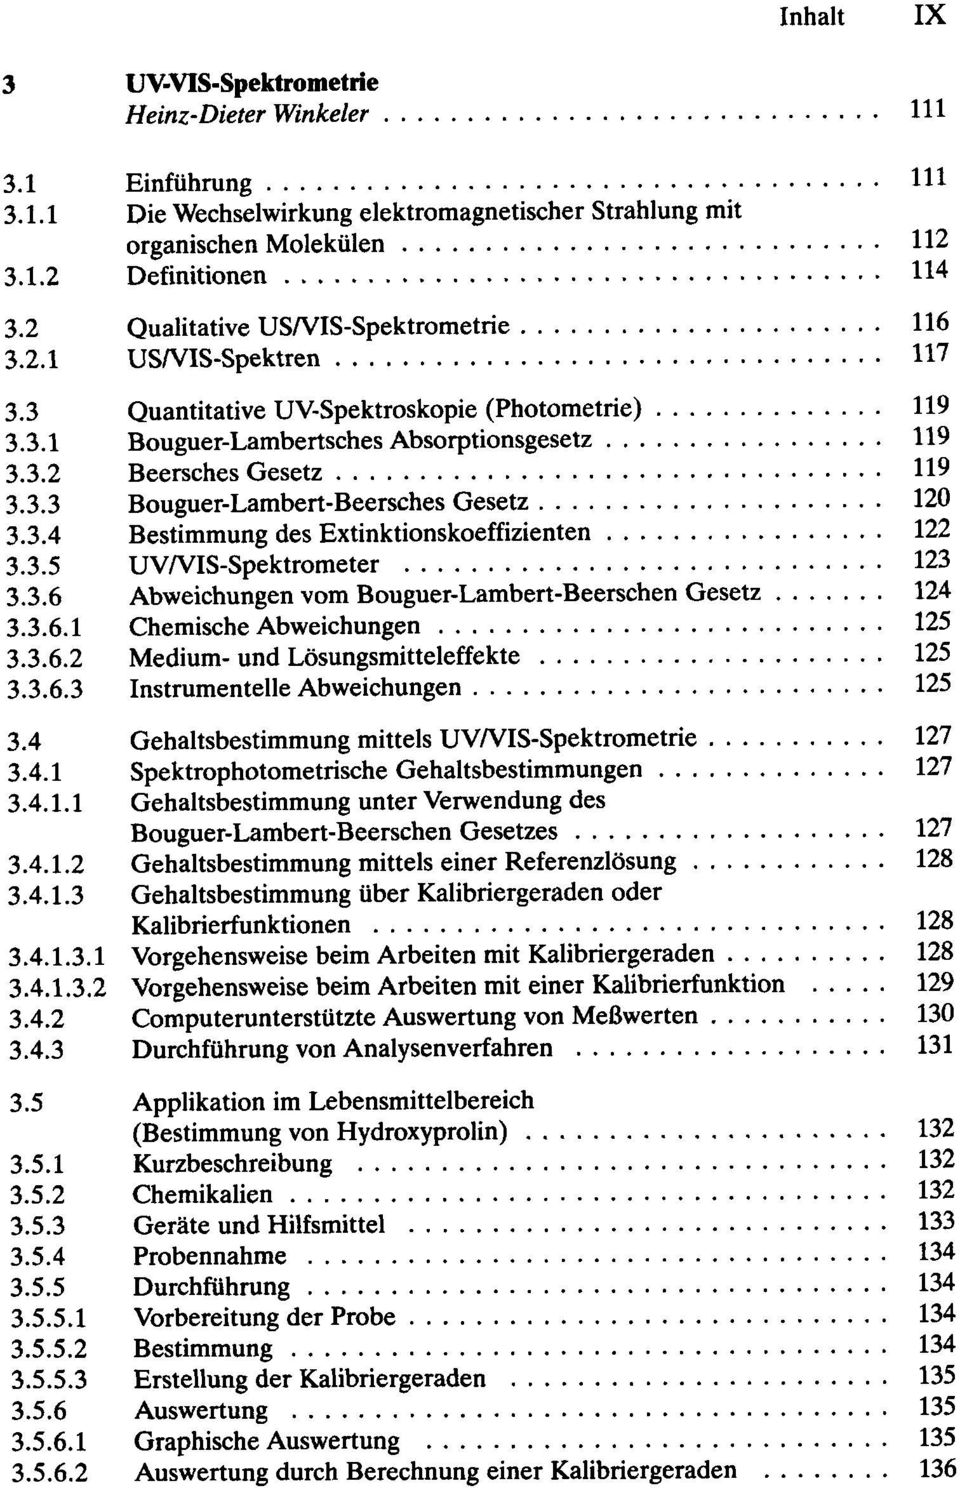 .. Bouguer-Lambertsches Absorptionsgesetz... Beersches Gesetz... Bouguer-Lambert-Beersches Gesetz... Bestimmung des Extinktionskoeffizienten... UVNIS-Spektrometer.